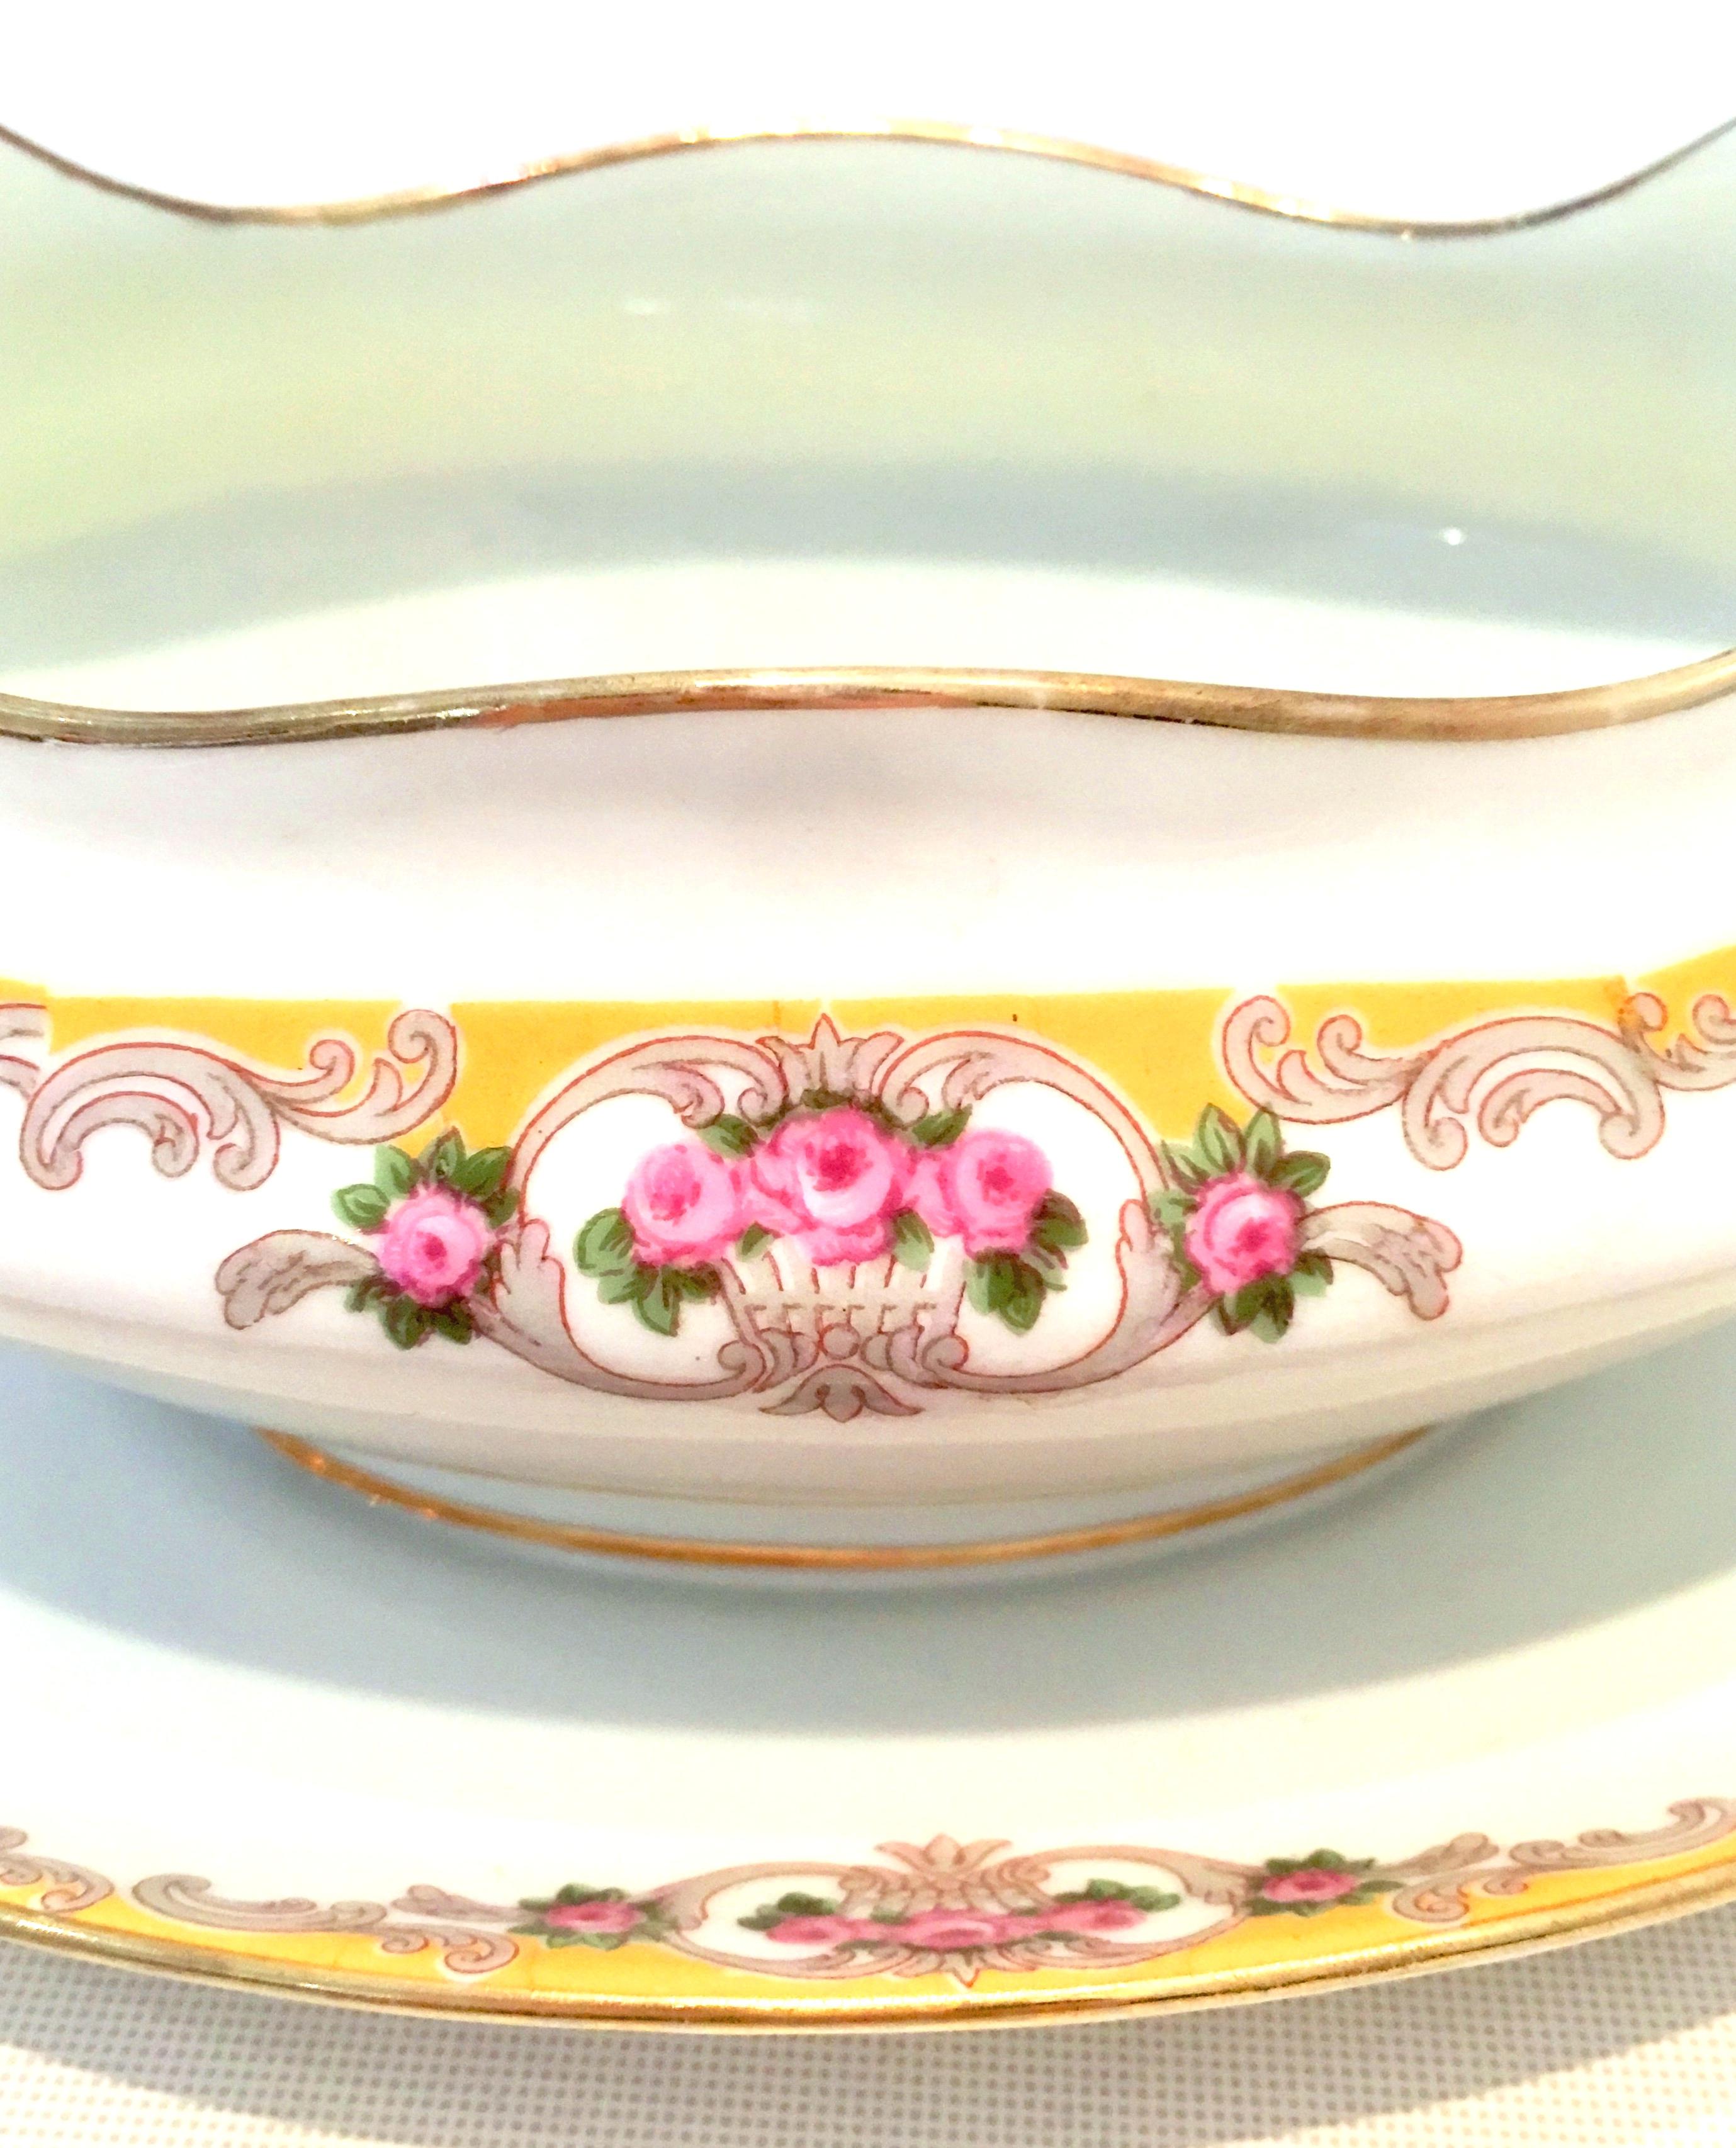 Art Nouveau 20th Century Limoges France Porcelain Serving Piece Set of 3 by M. Redon For Sale